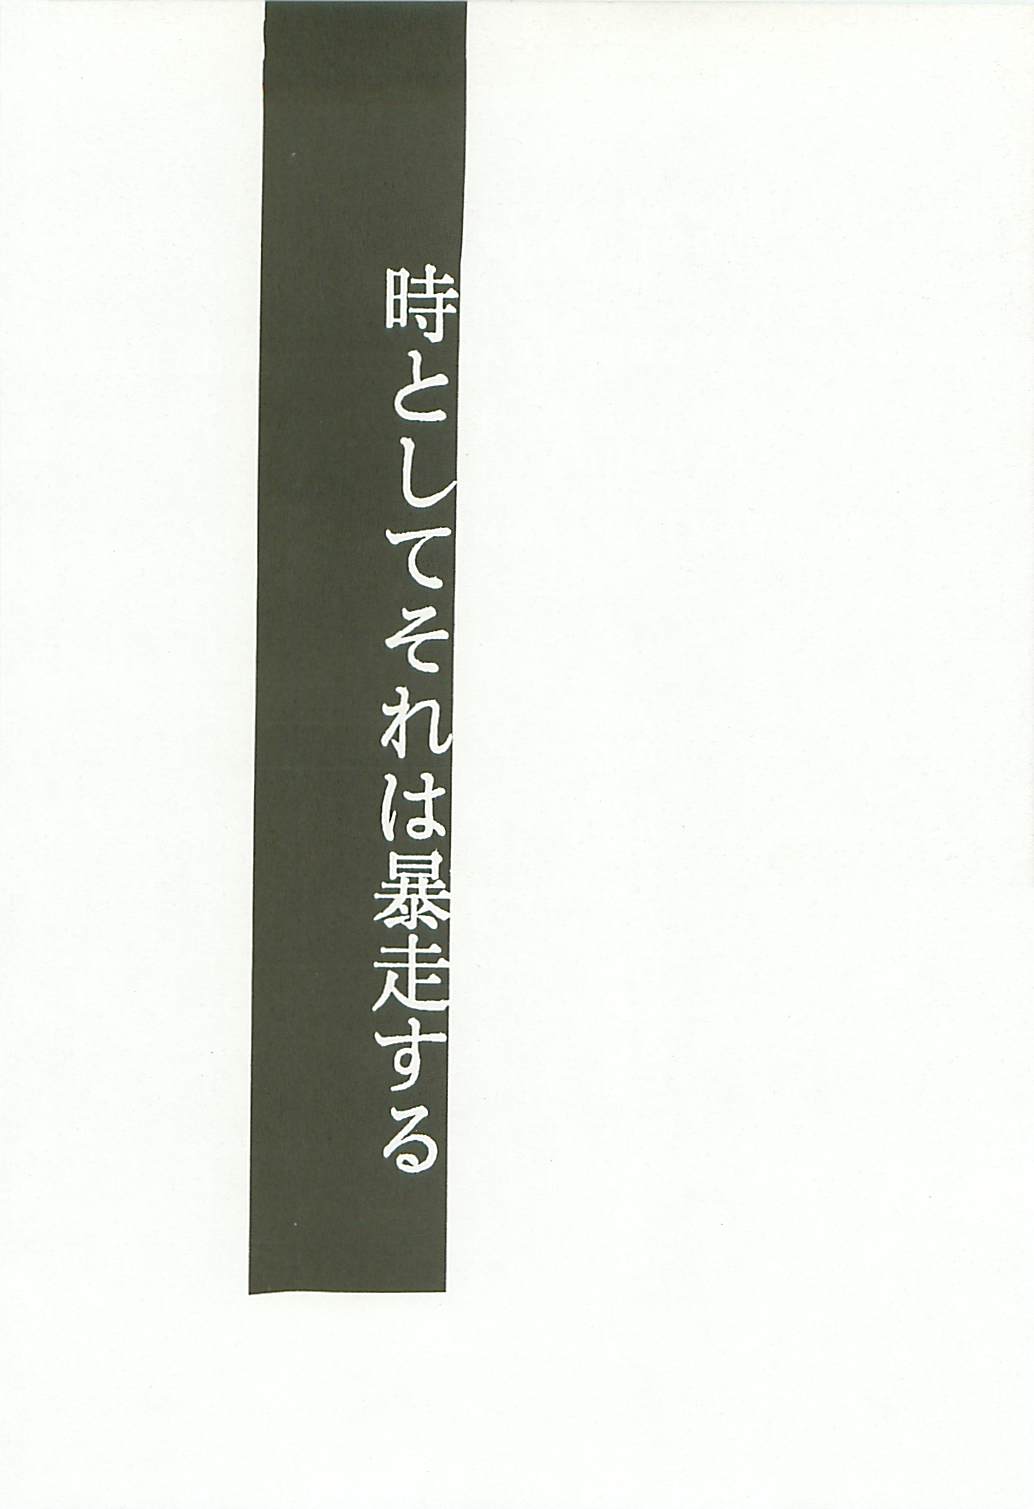 (C54) [スタジオKIMIGABUCHI (きみまる)] Love Is Alive (アキハバラ電脳組、トライガン、ロスト・ユニバース、トゥハート)